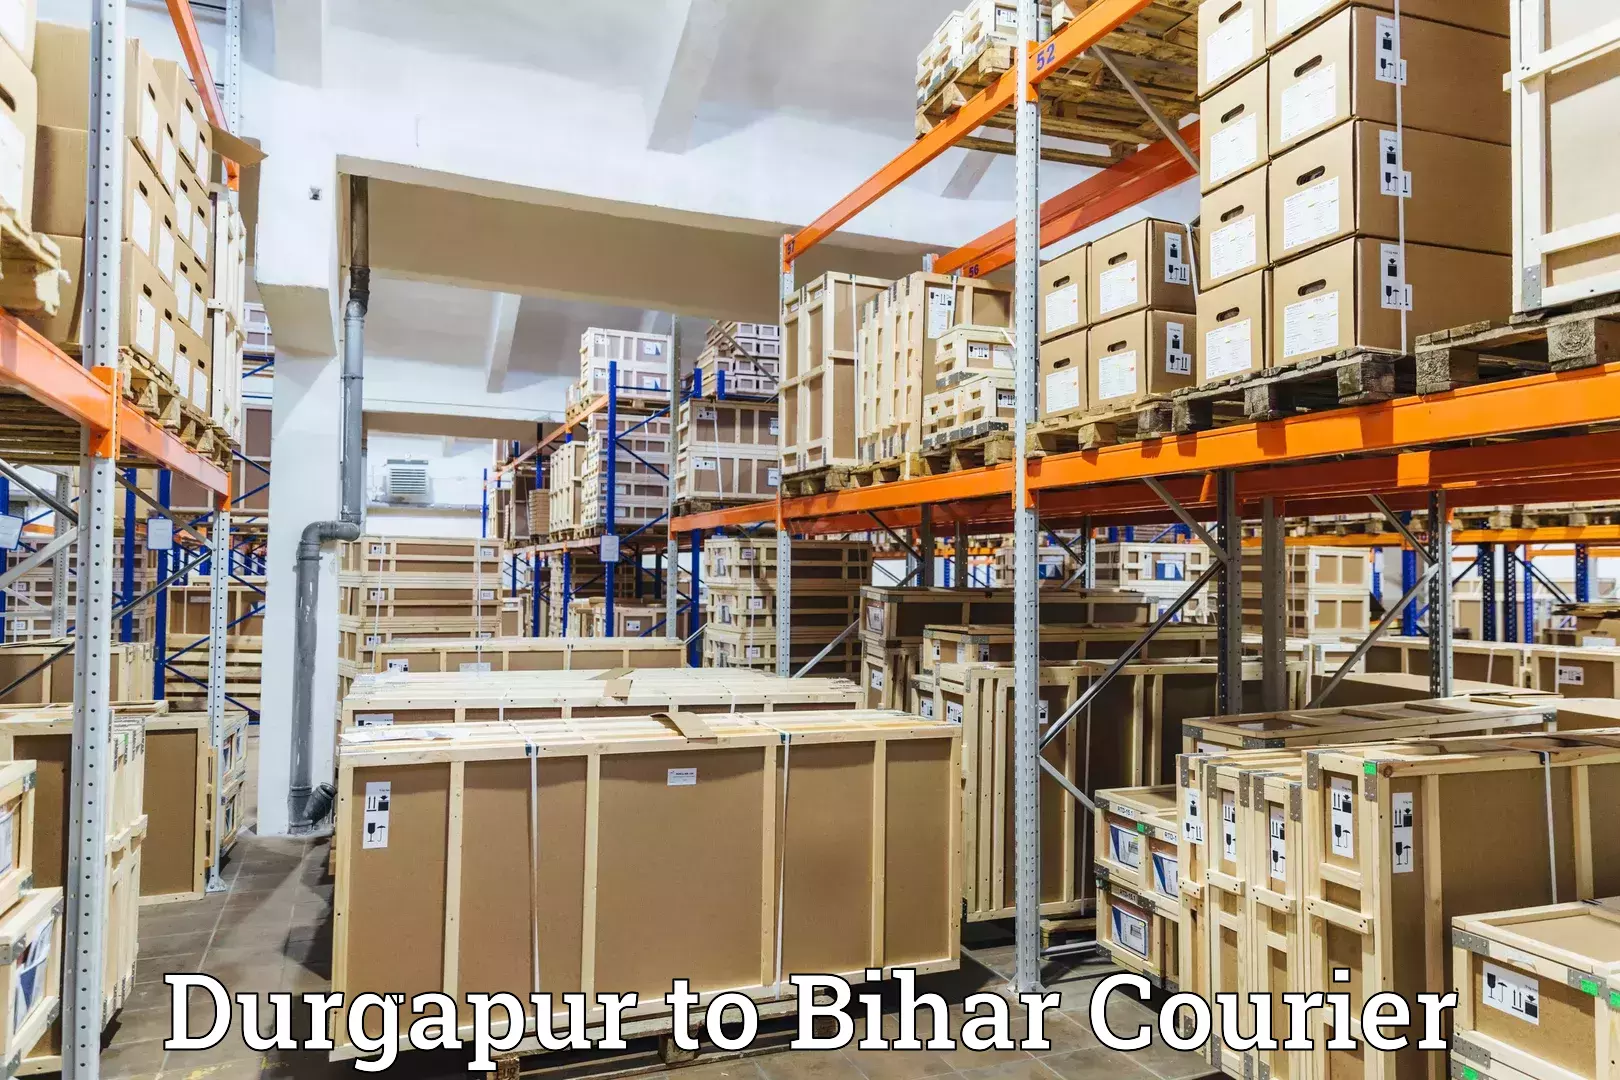 International parcel service Durgapur to Bhorey